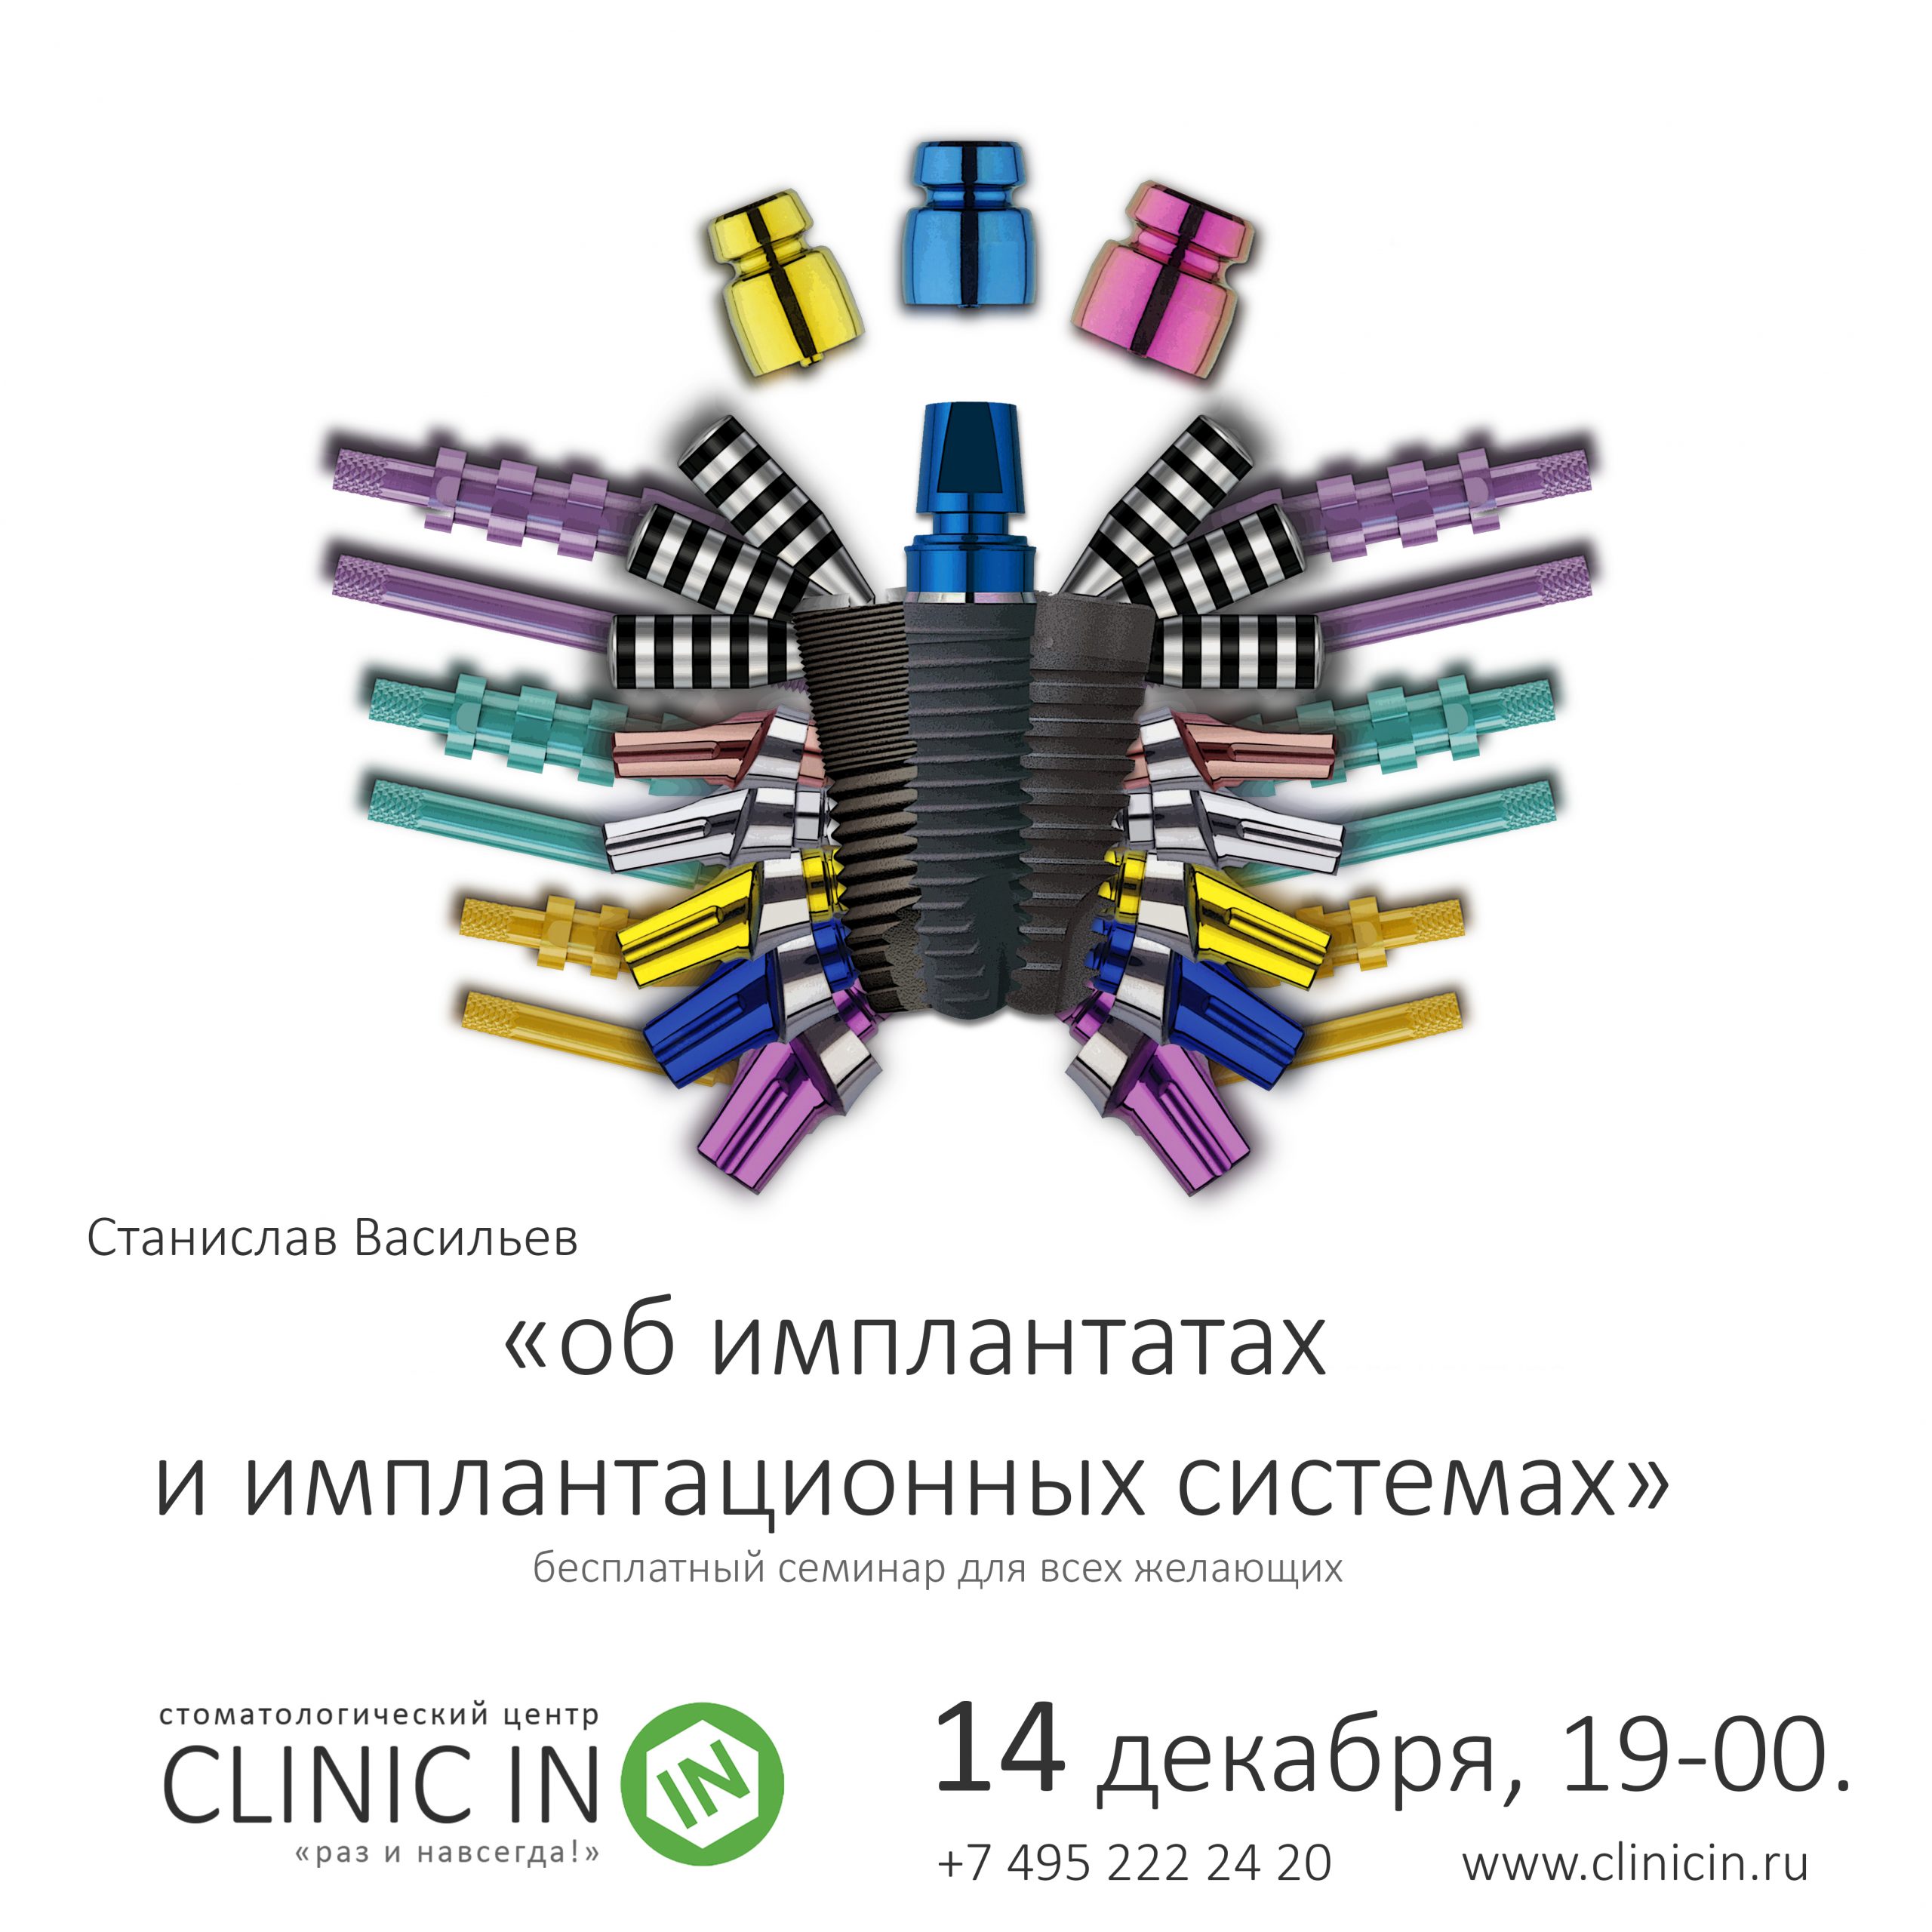 14 декабря, 19-00, CLINIC IN: «Об имплантатах и имплантационных системах»